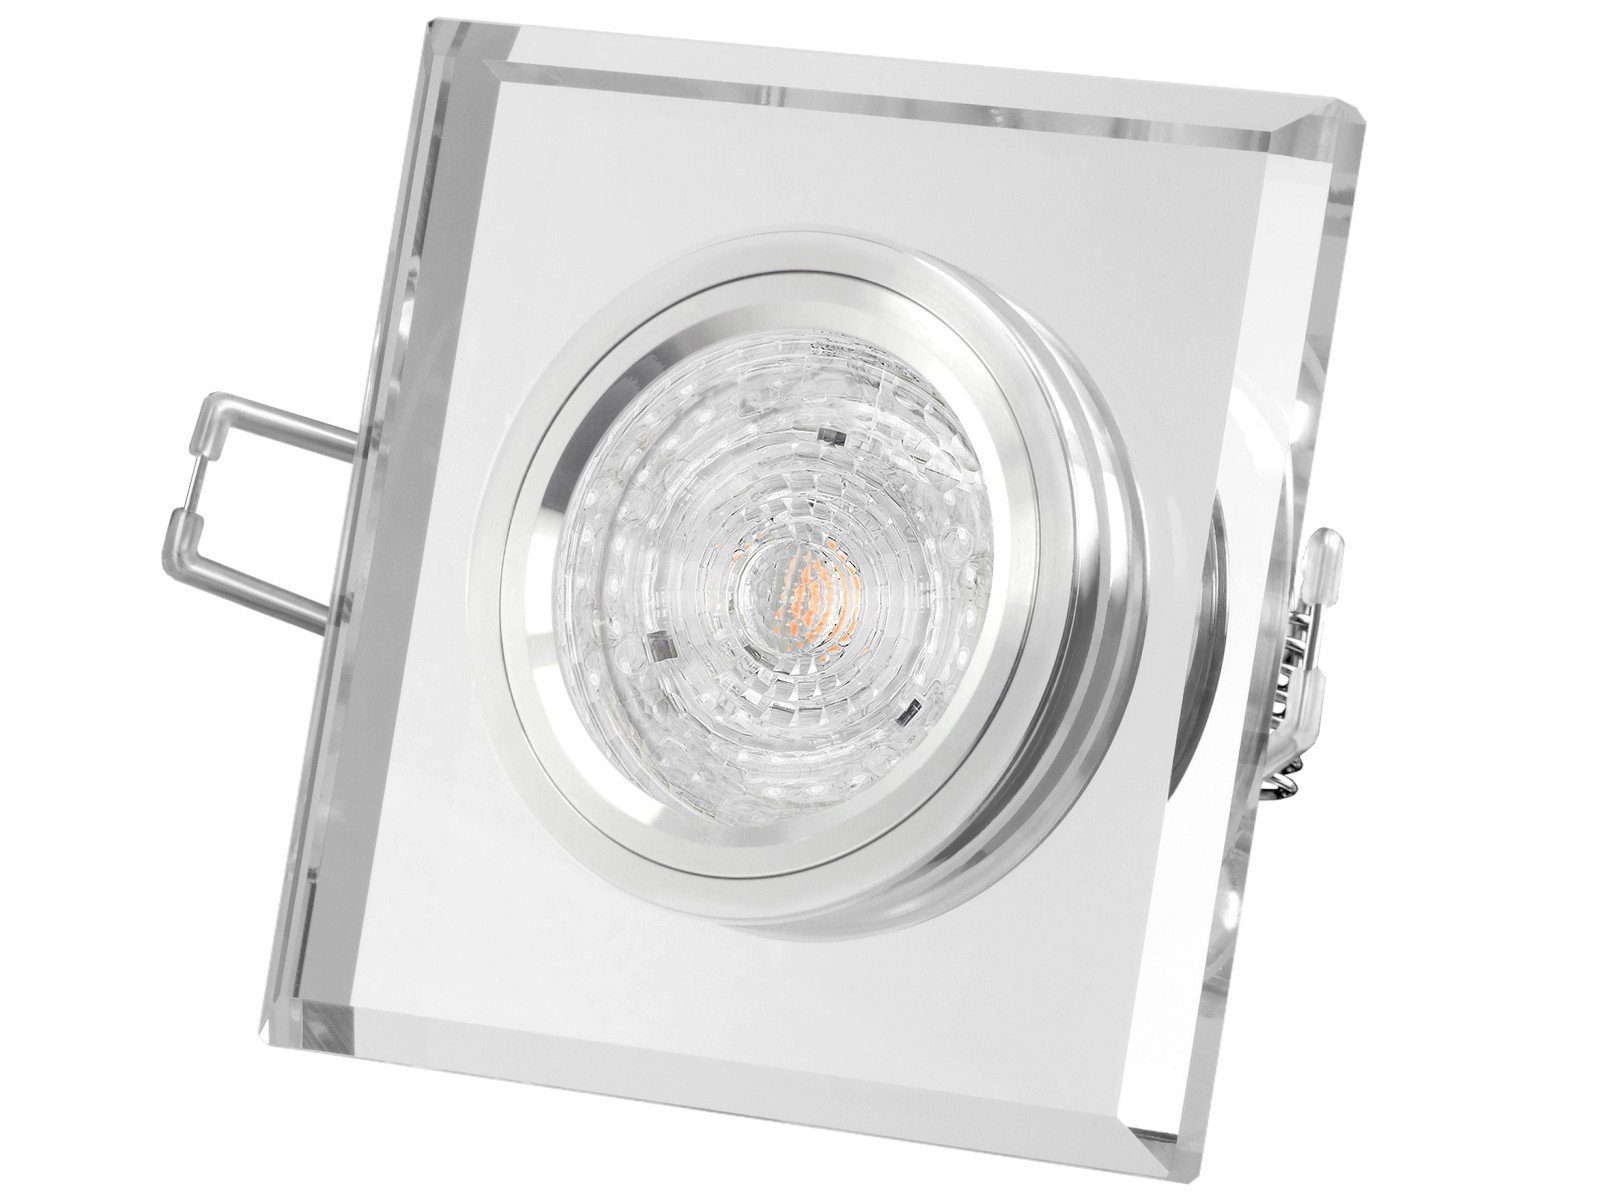 SSC-LUXon LED Einbaustrahler Design LED-Einbaustrahler aus Glas quadratisch klar spiegelnd, 4,9W